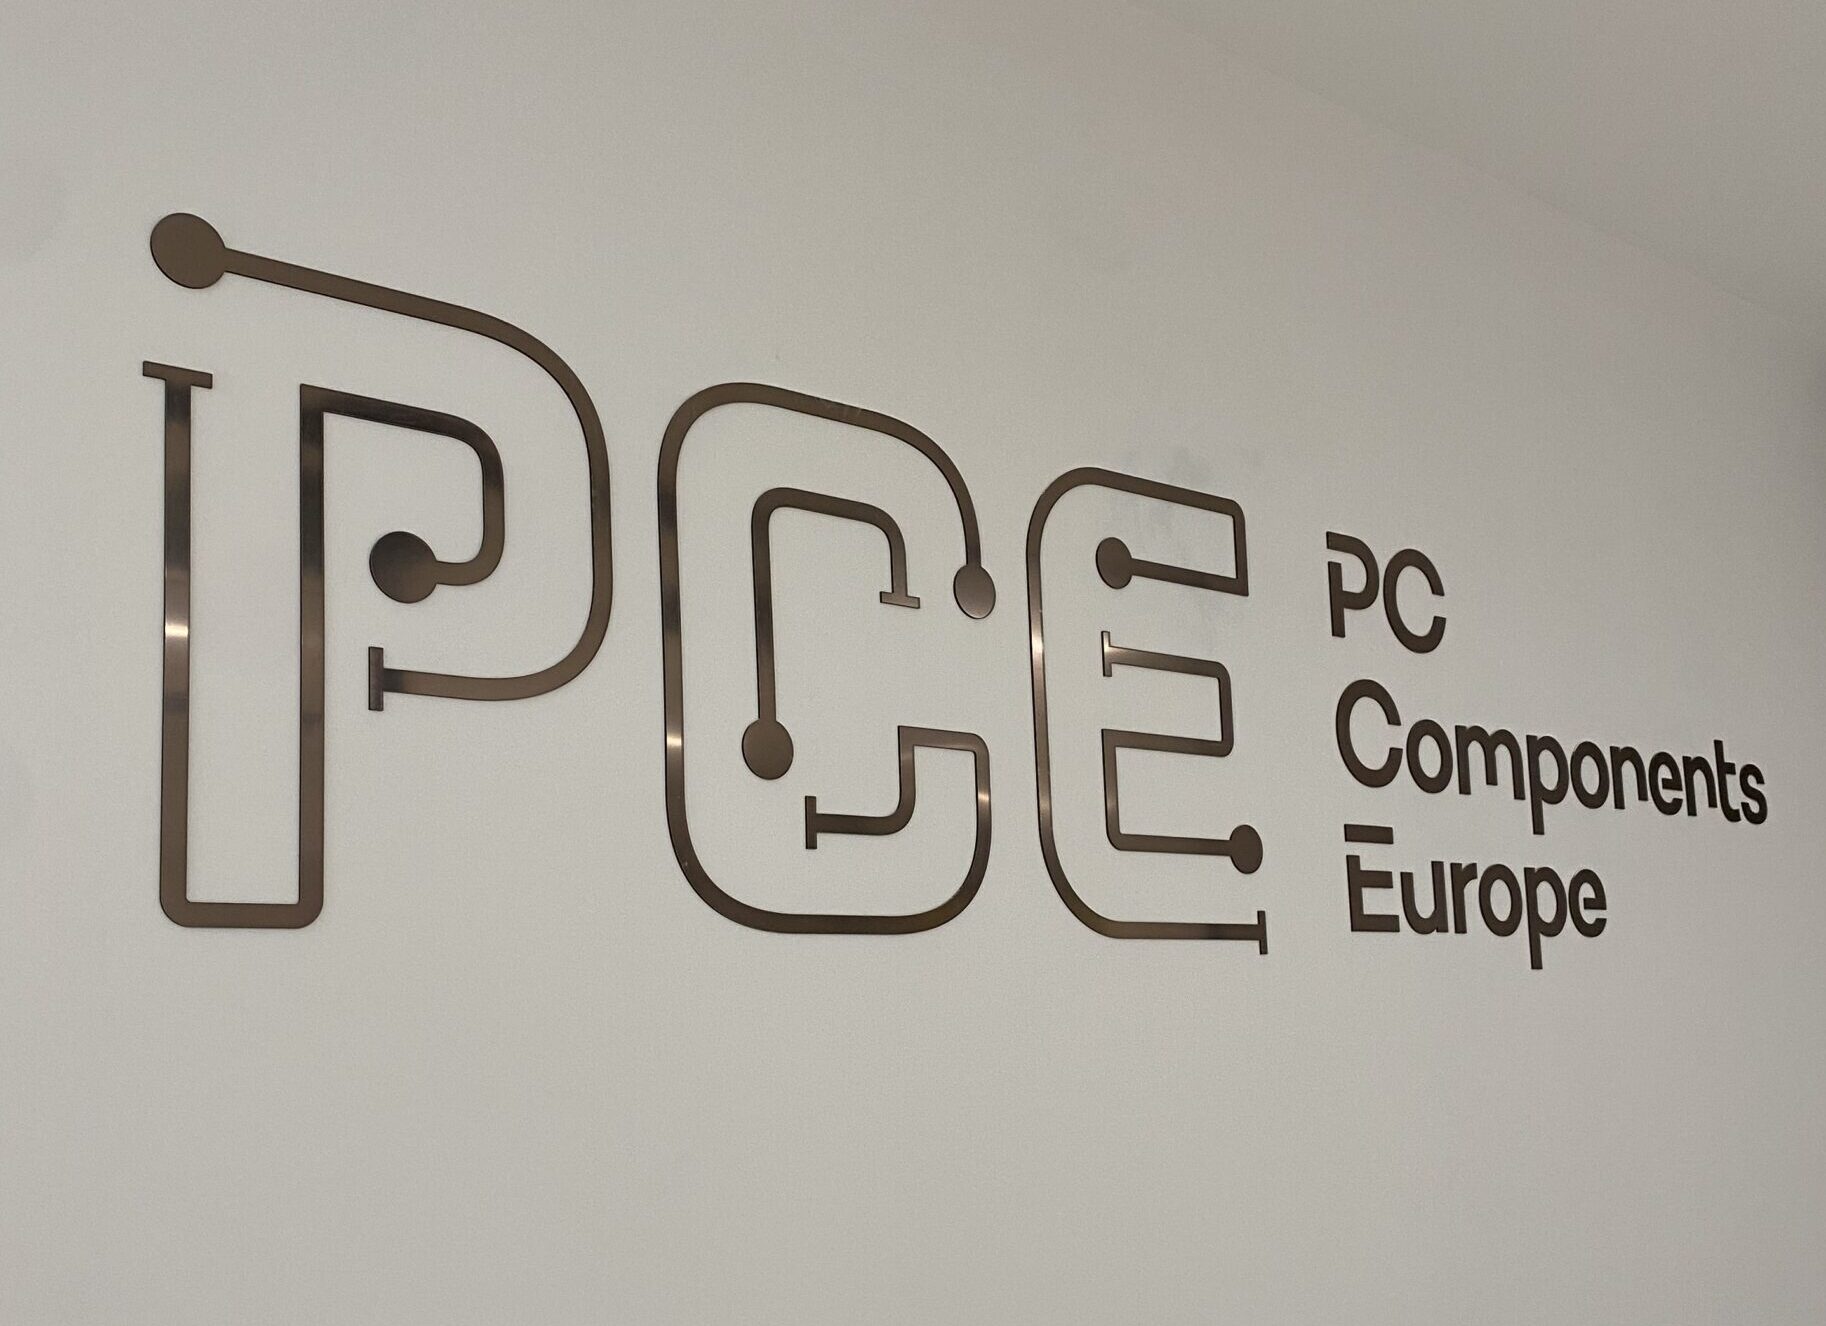 PC Components Europe Ihr Händler für elektromechanische und elektronische Komponenten für Qualität und Komfort. Unsere Erfahrung seit 2001